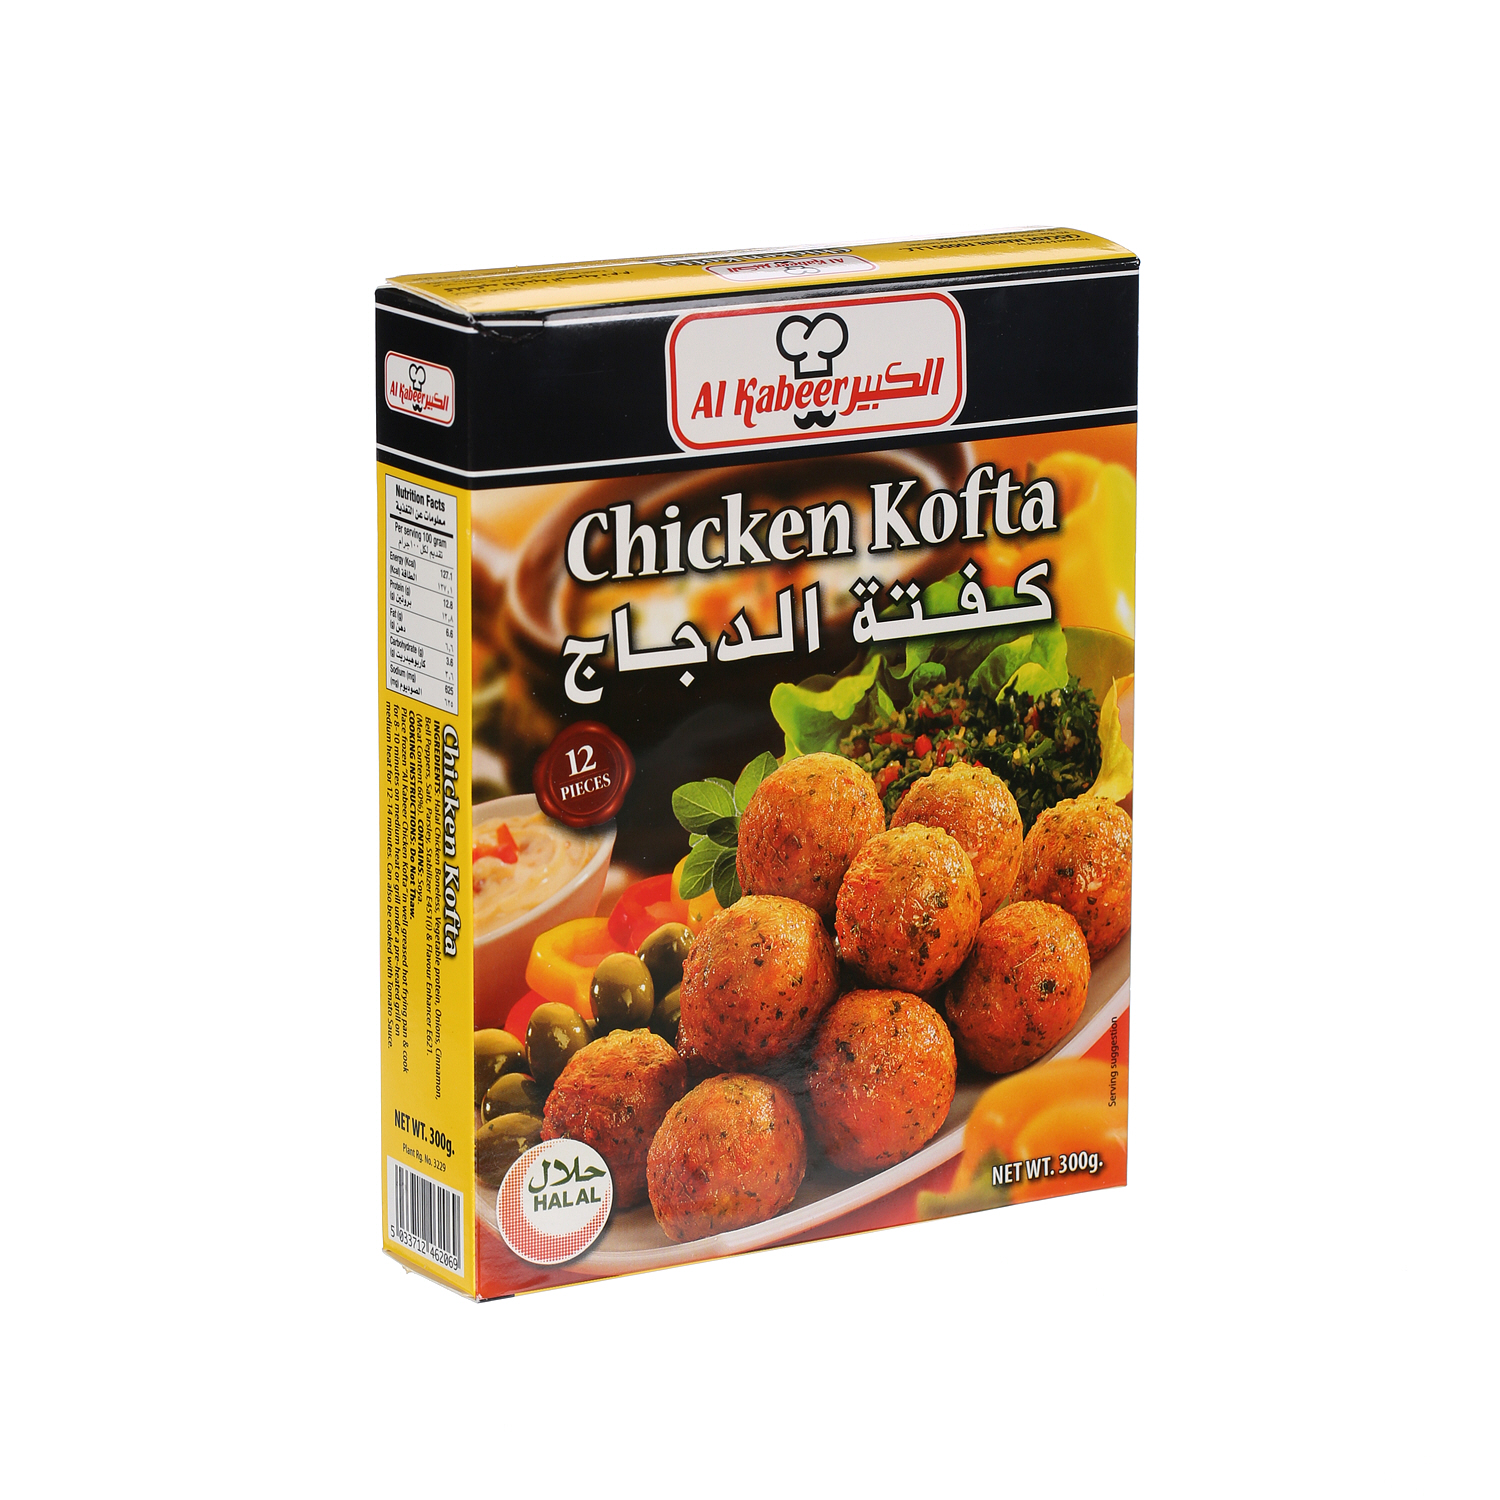 Al Kabeer Chicken Kofta 300 g